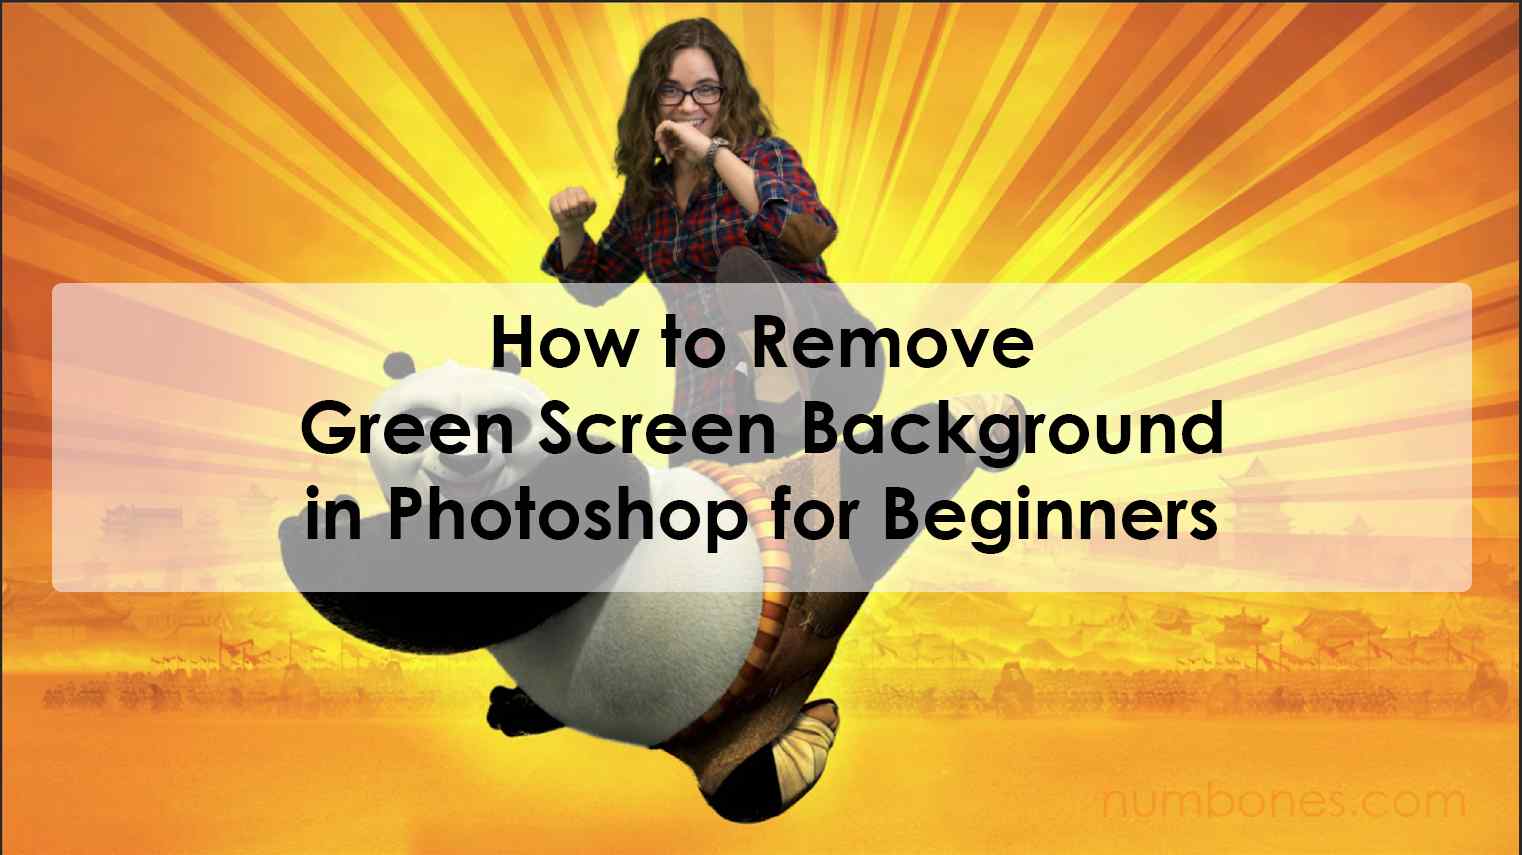 Cách xóa nền màn hình xanh trong Photoshop cho người mới bắt đầu: Bạn mới bắt đầu làm video và muốn loại bỏ nền màn hình xanh trong Photoshop? Hãy xem hướng dẫn chi tiết với những bước đơn giản và dễ hiểu để có một video chất lượng cao và thu hút người xem.